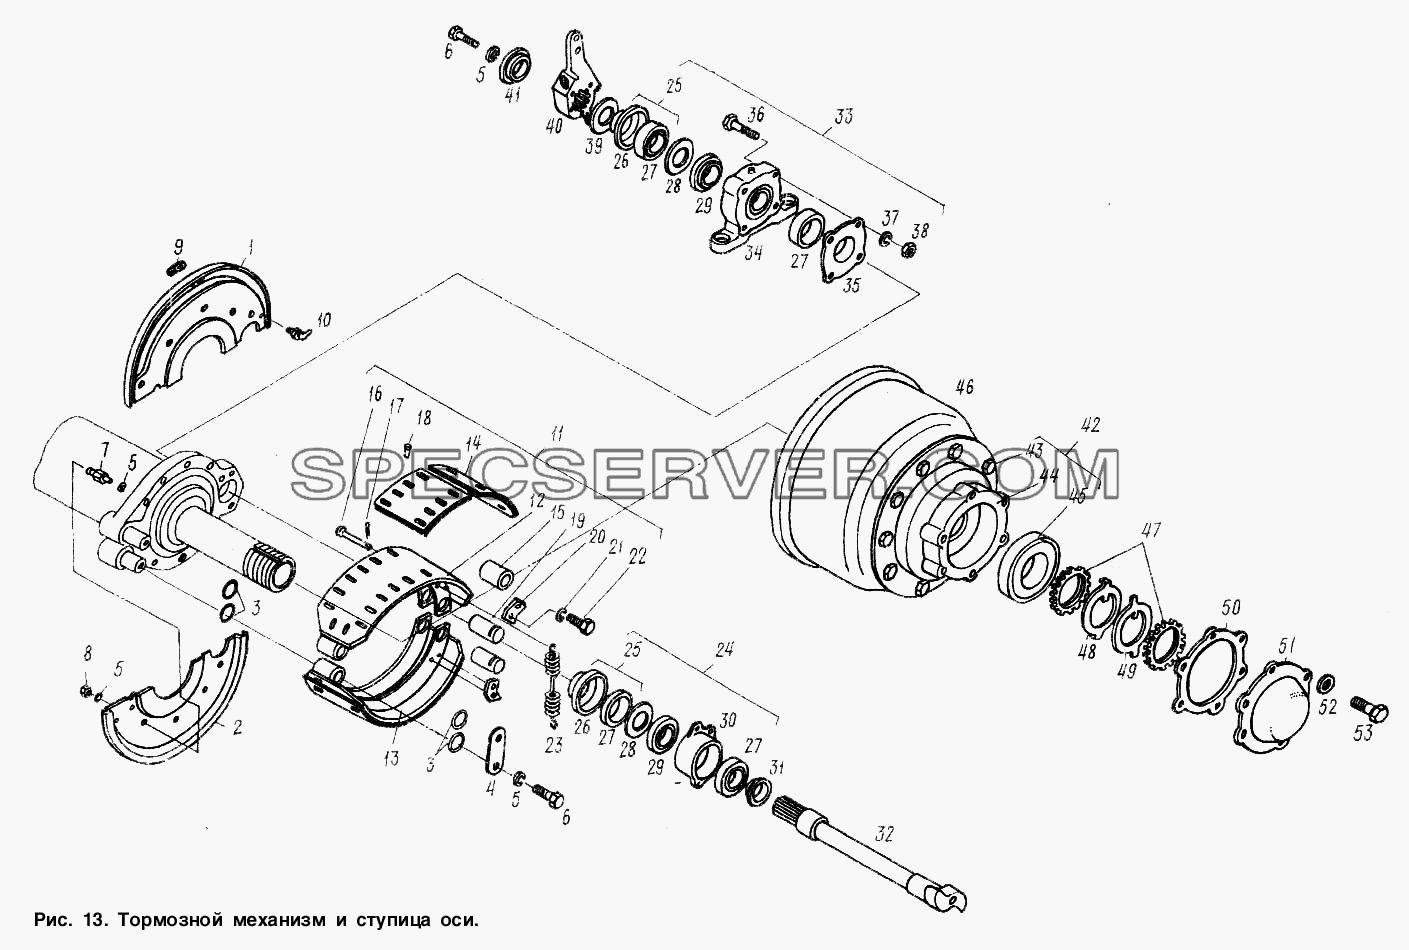 Тормозной механизм и ступица оси для МАЗ-9506 (список запасных частей)